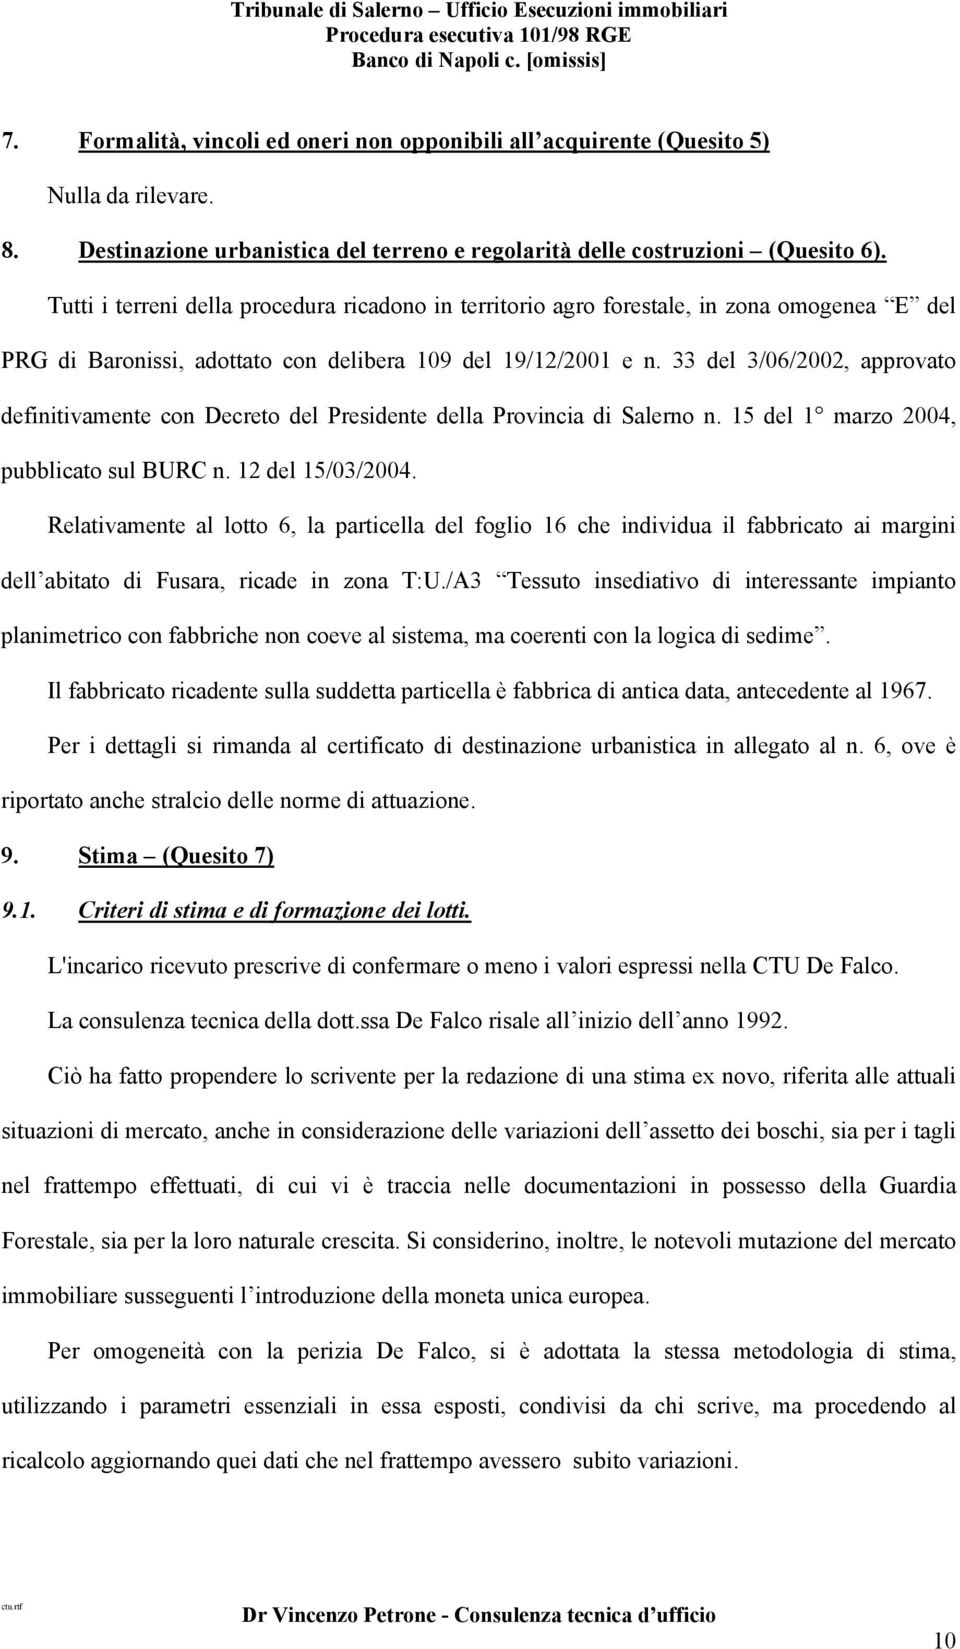 33 del 3/06/2002, approvato definitivamente con Decreto del Presidente della Provincia di Salerno n. 15 del 1 marzo 2004, pubblicato sul BURC n. 12 del 15/03/2004.